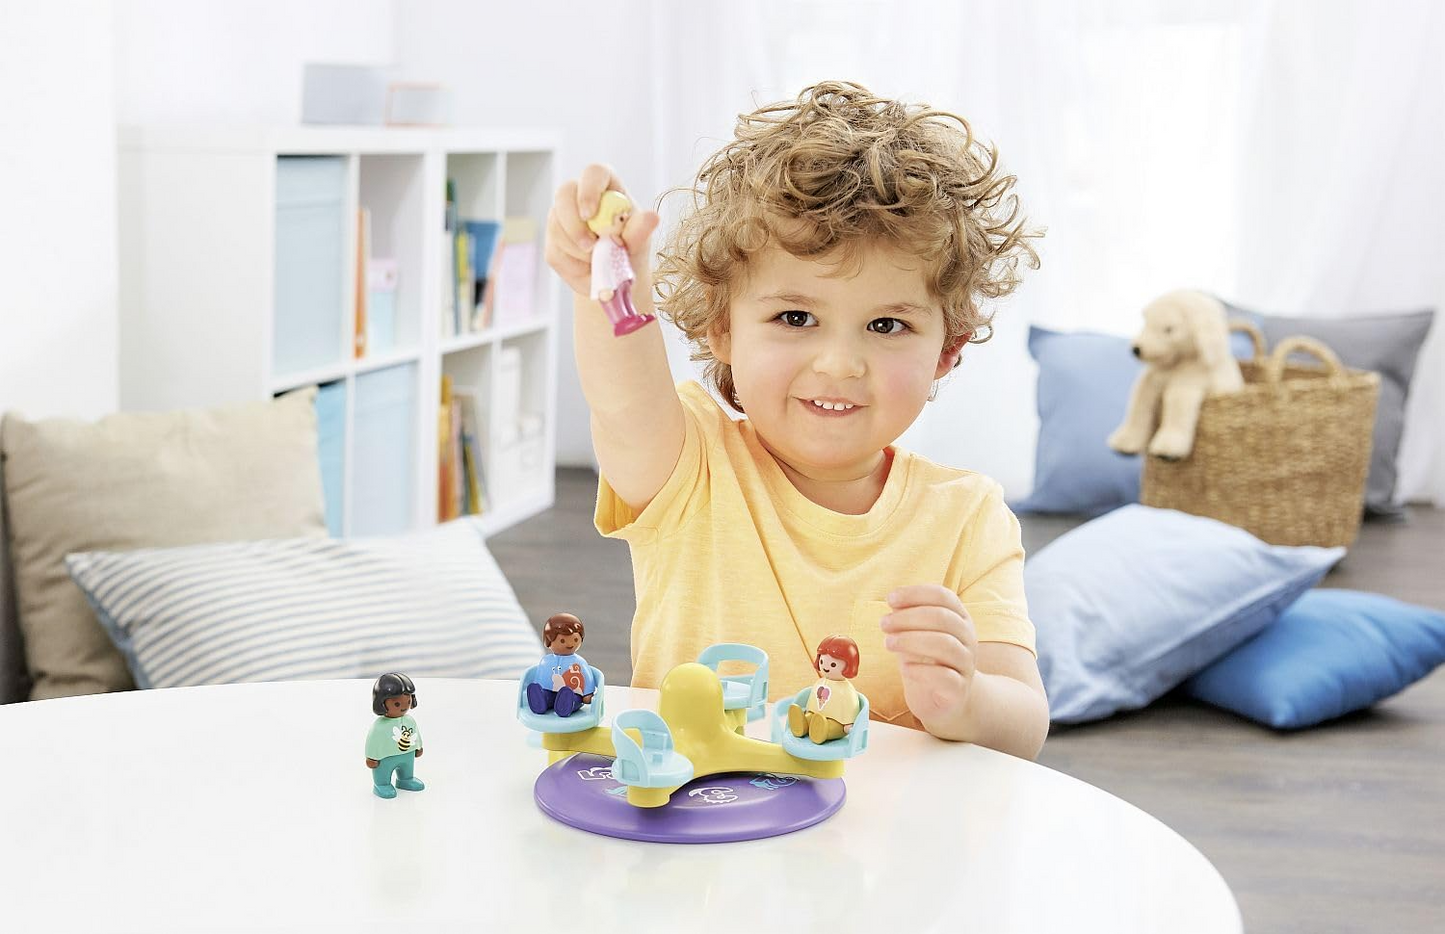 Playmobil 71324 1.2.3: Número Merry-Go-Round, brinquedo educativo e de primeira contagem para crianças pequenas, conjuntos de jogos adequados para crianças com mais de 12 meses